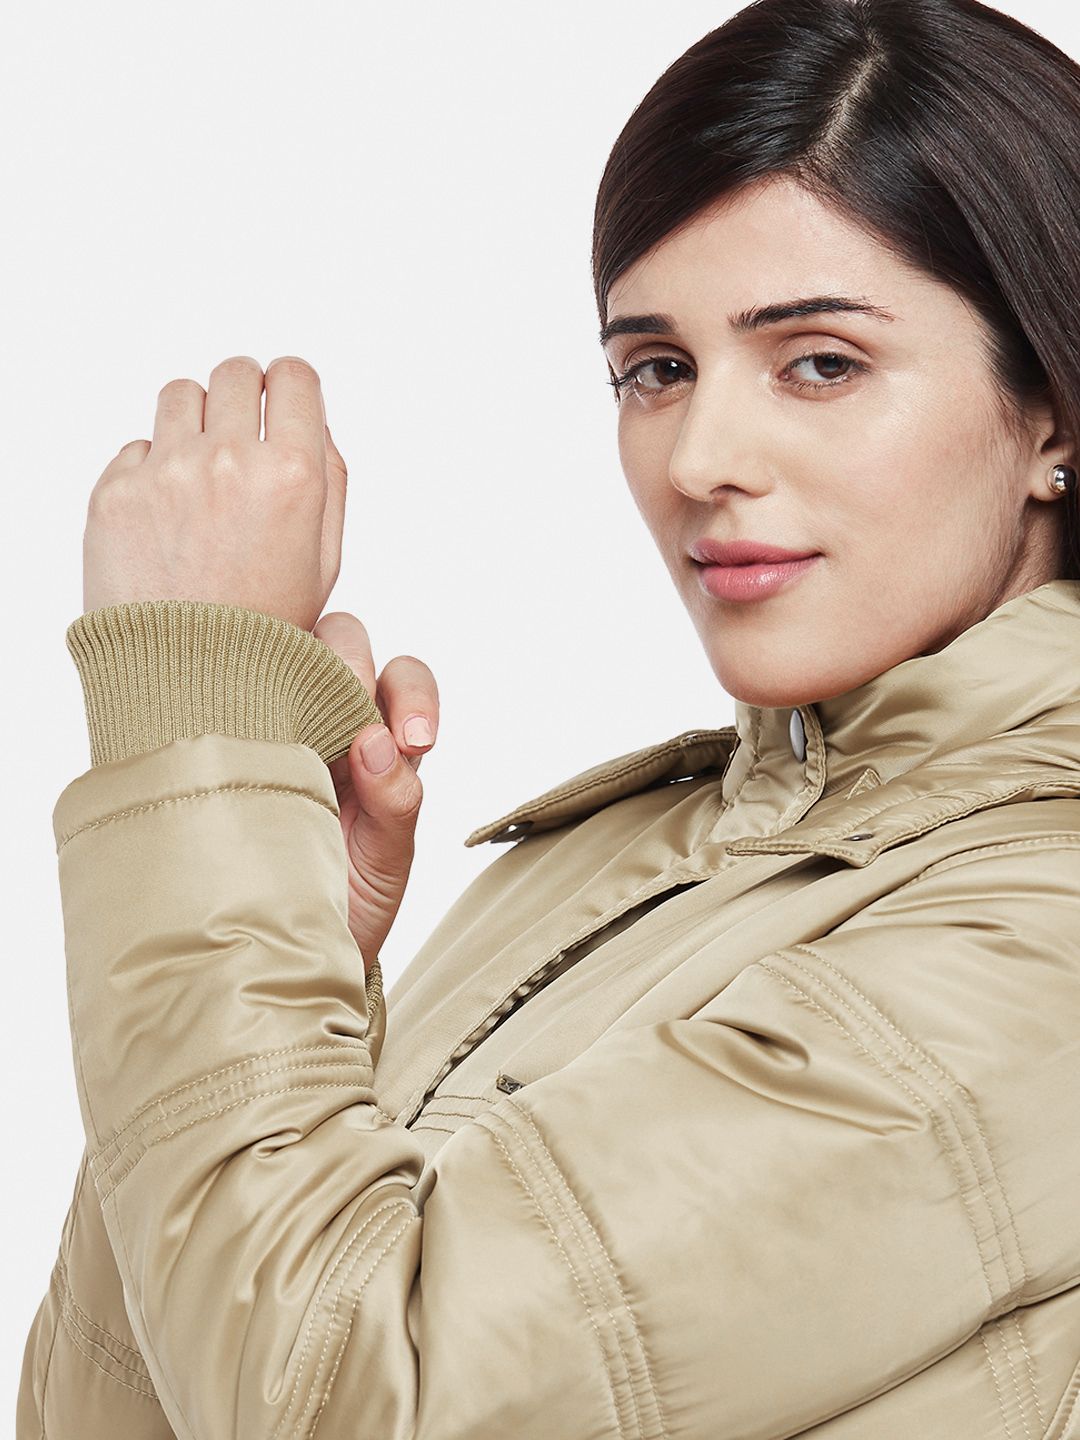 Beige Fleece Lined Hooded Parka Jacket | Women